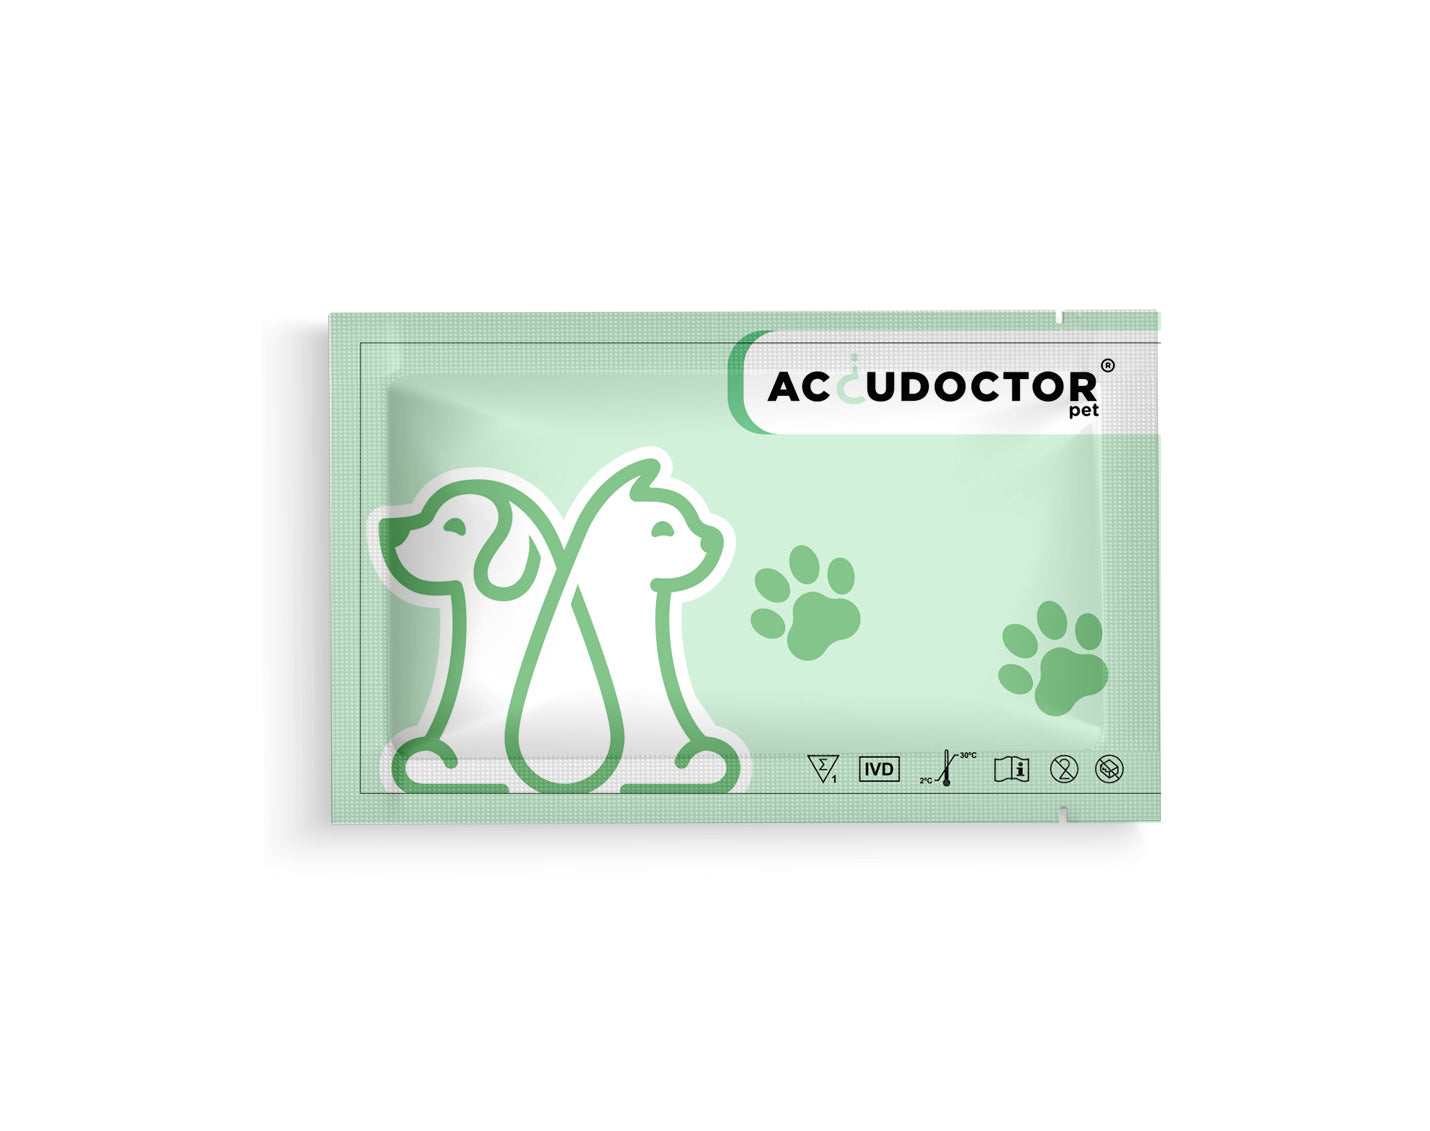 2 Accudoctor Canine Parvovirus Test CPV Ag + Giardia Lamblia Ag